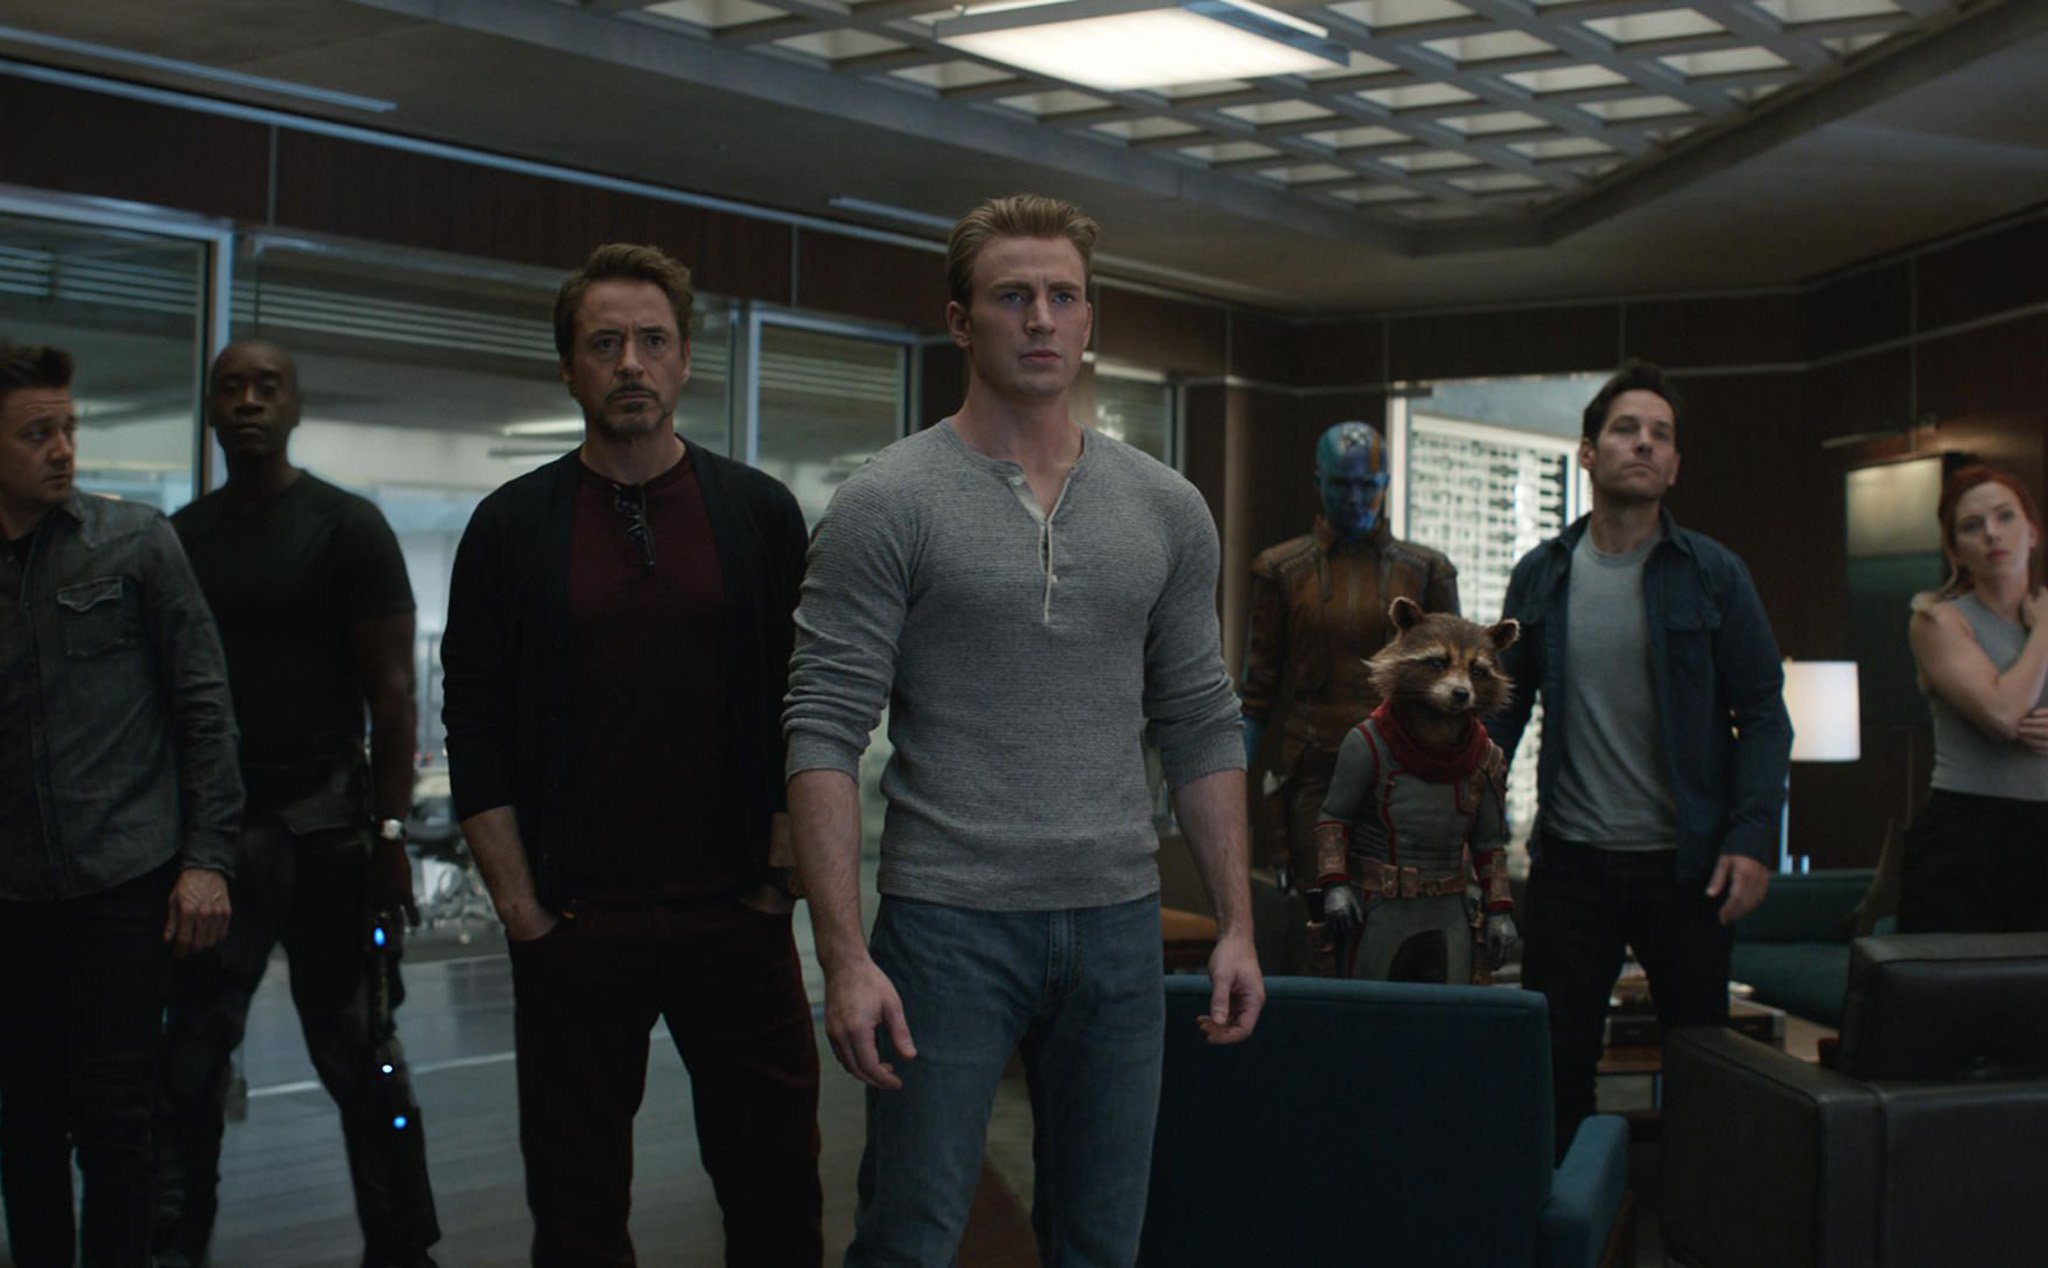 Đúng kỳ vọng, Avengers: Endgame tạo kỷ lục mới thu về 1,2 tỷ USD trong tuần đầu công chiếu